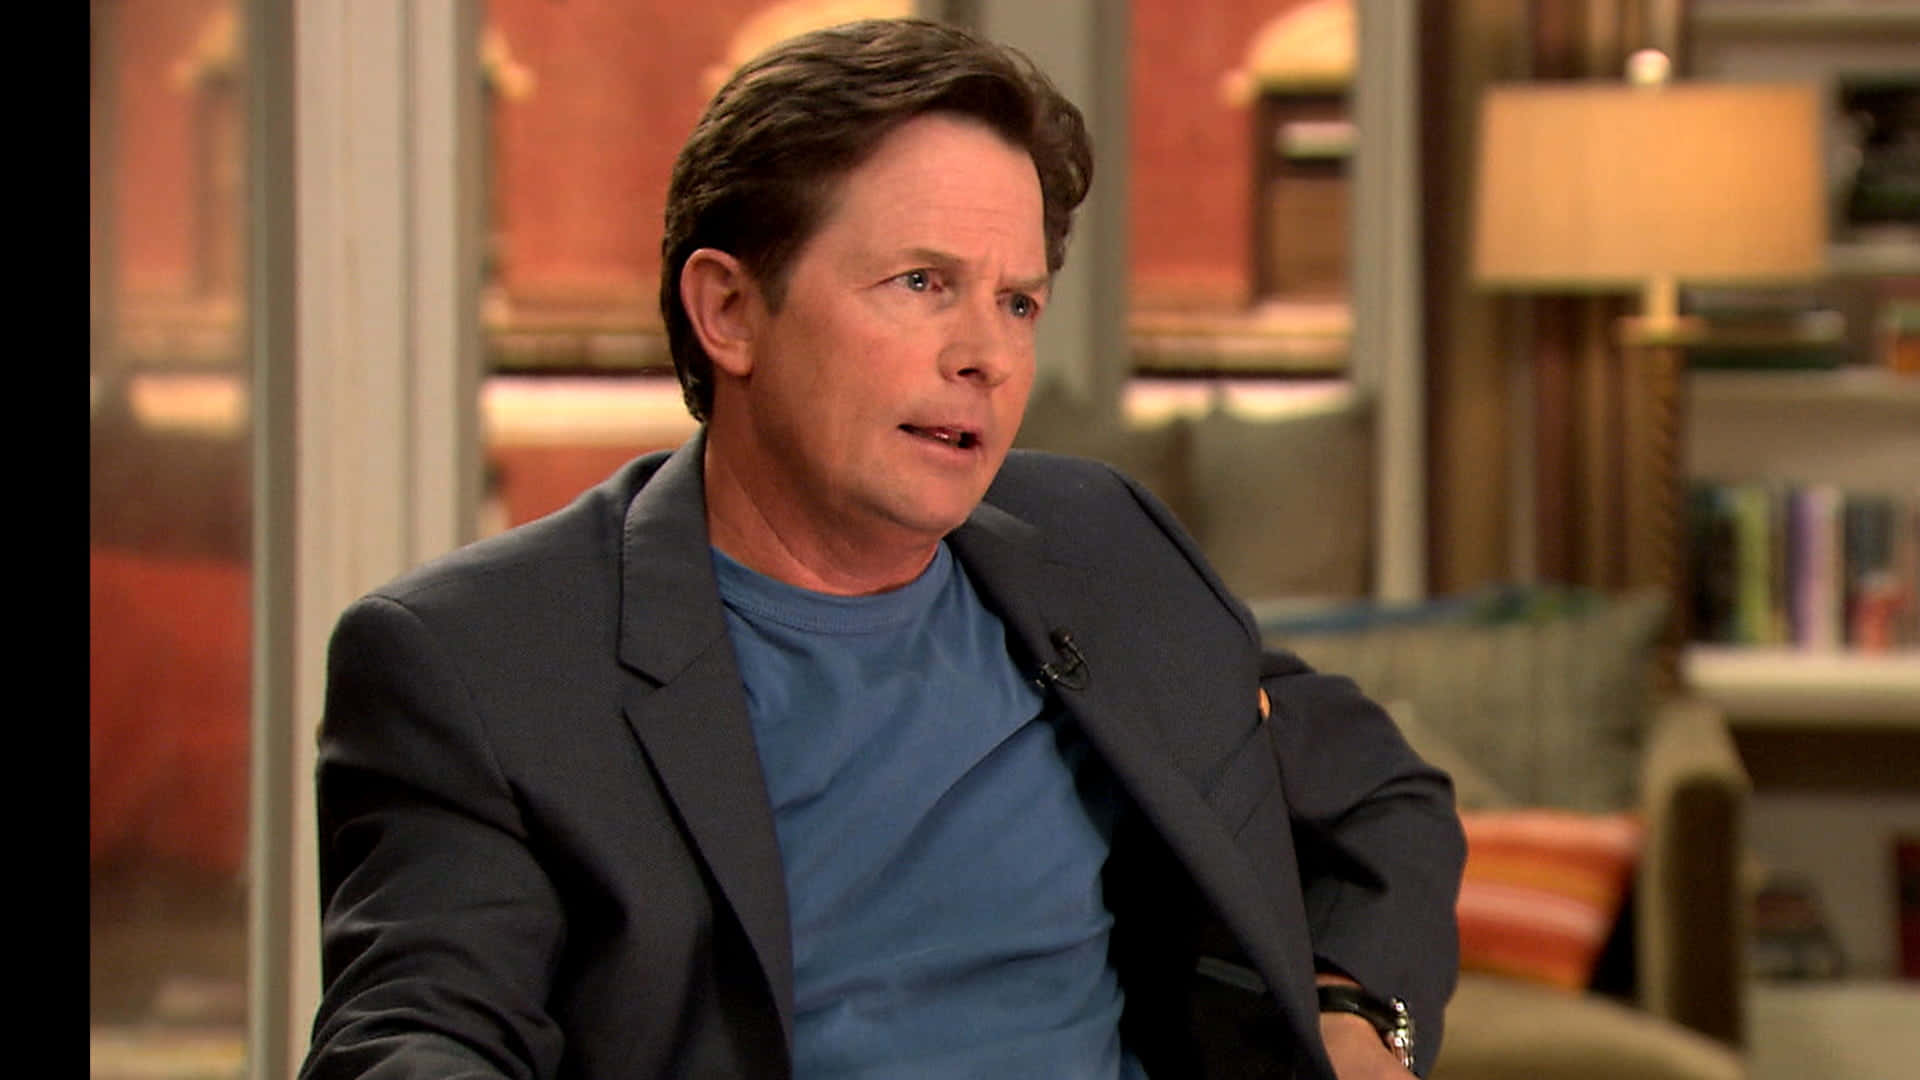 Michael J. Fox, A Legendary Actor